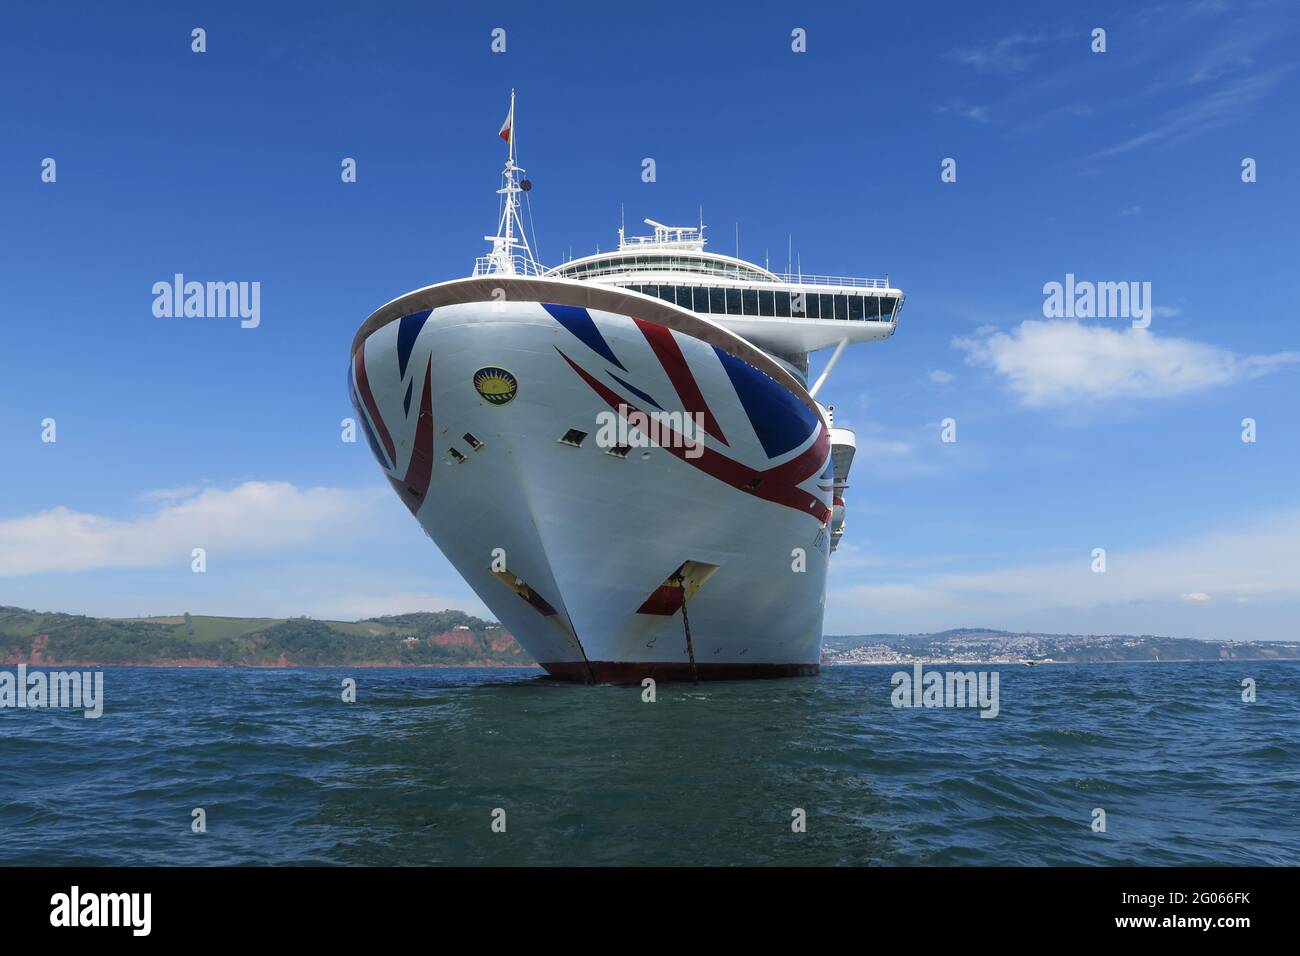 The P&O Cruise Liner 'Ventura' Moored In Labrador Bay, Teignmouth, Devon Stock Photo